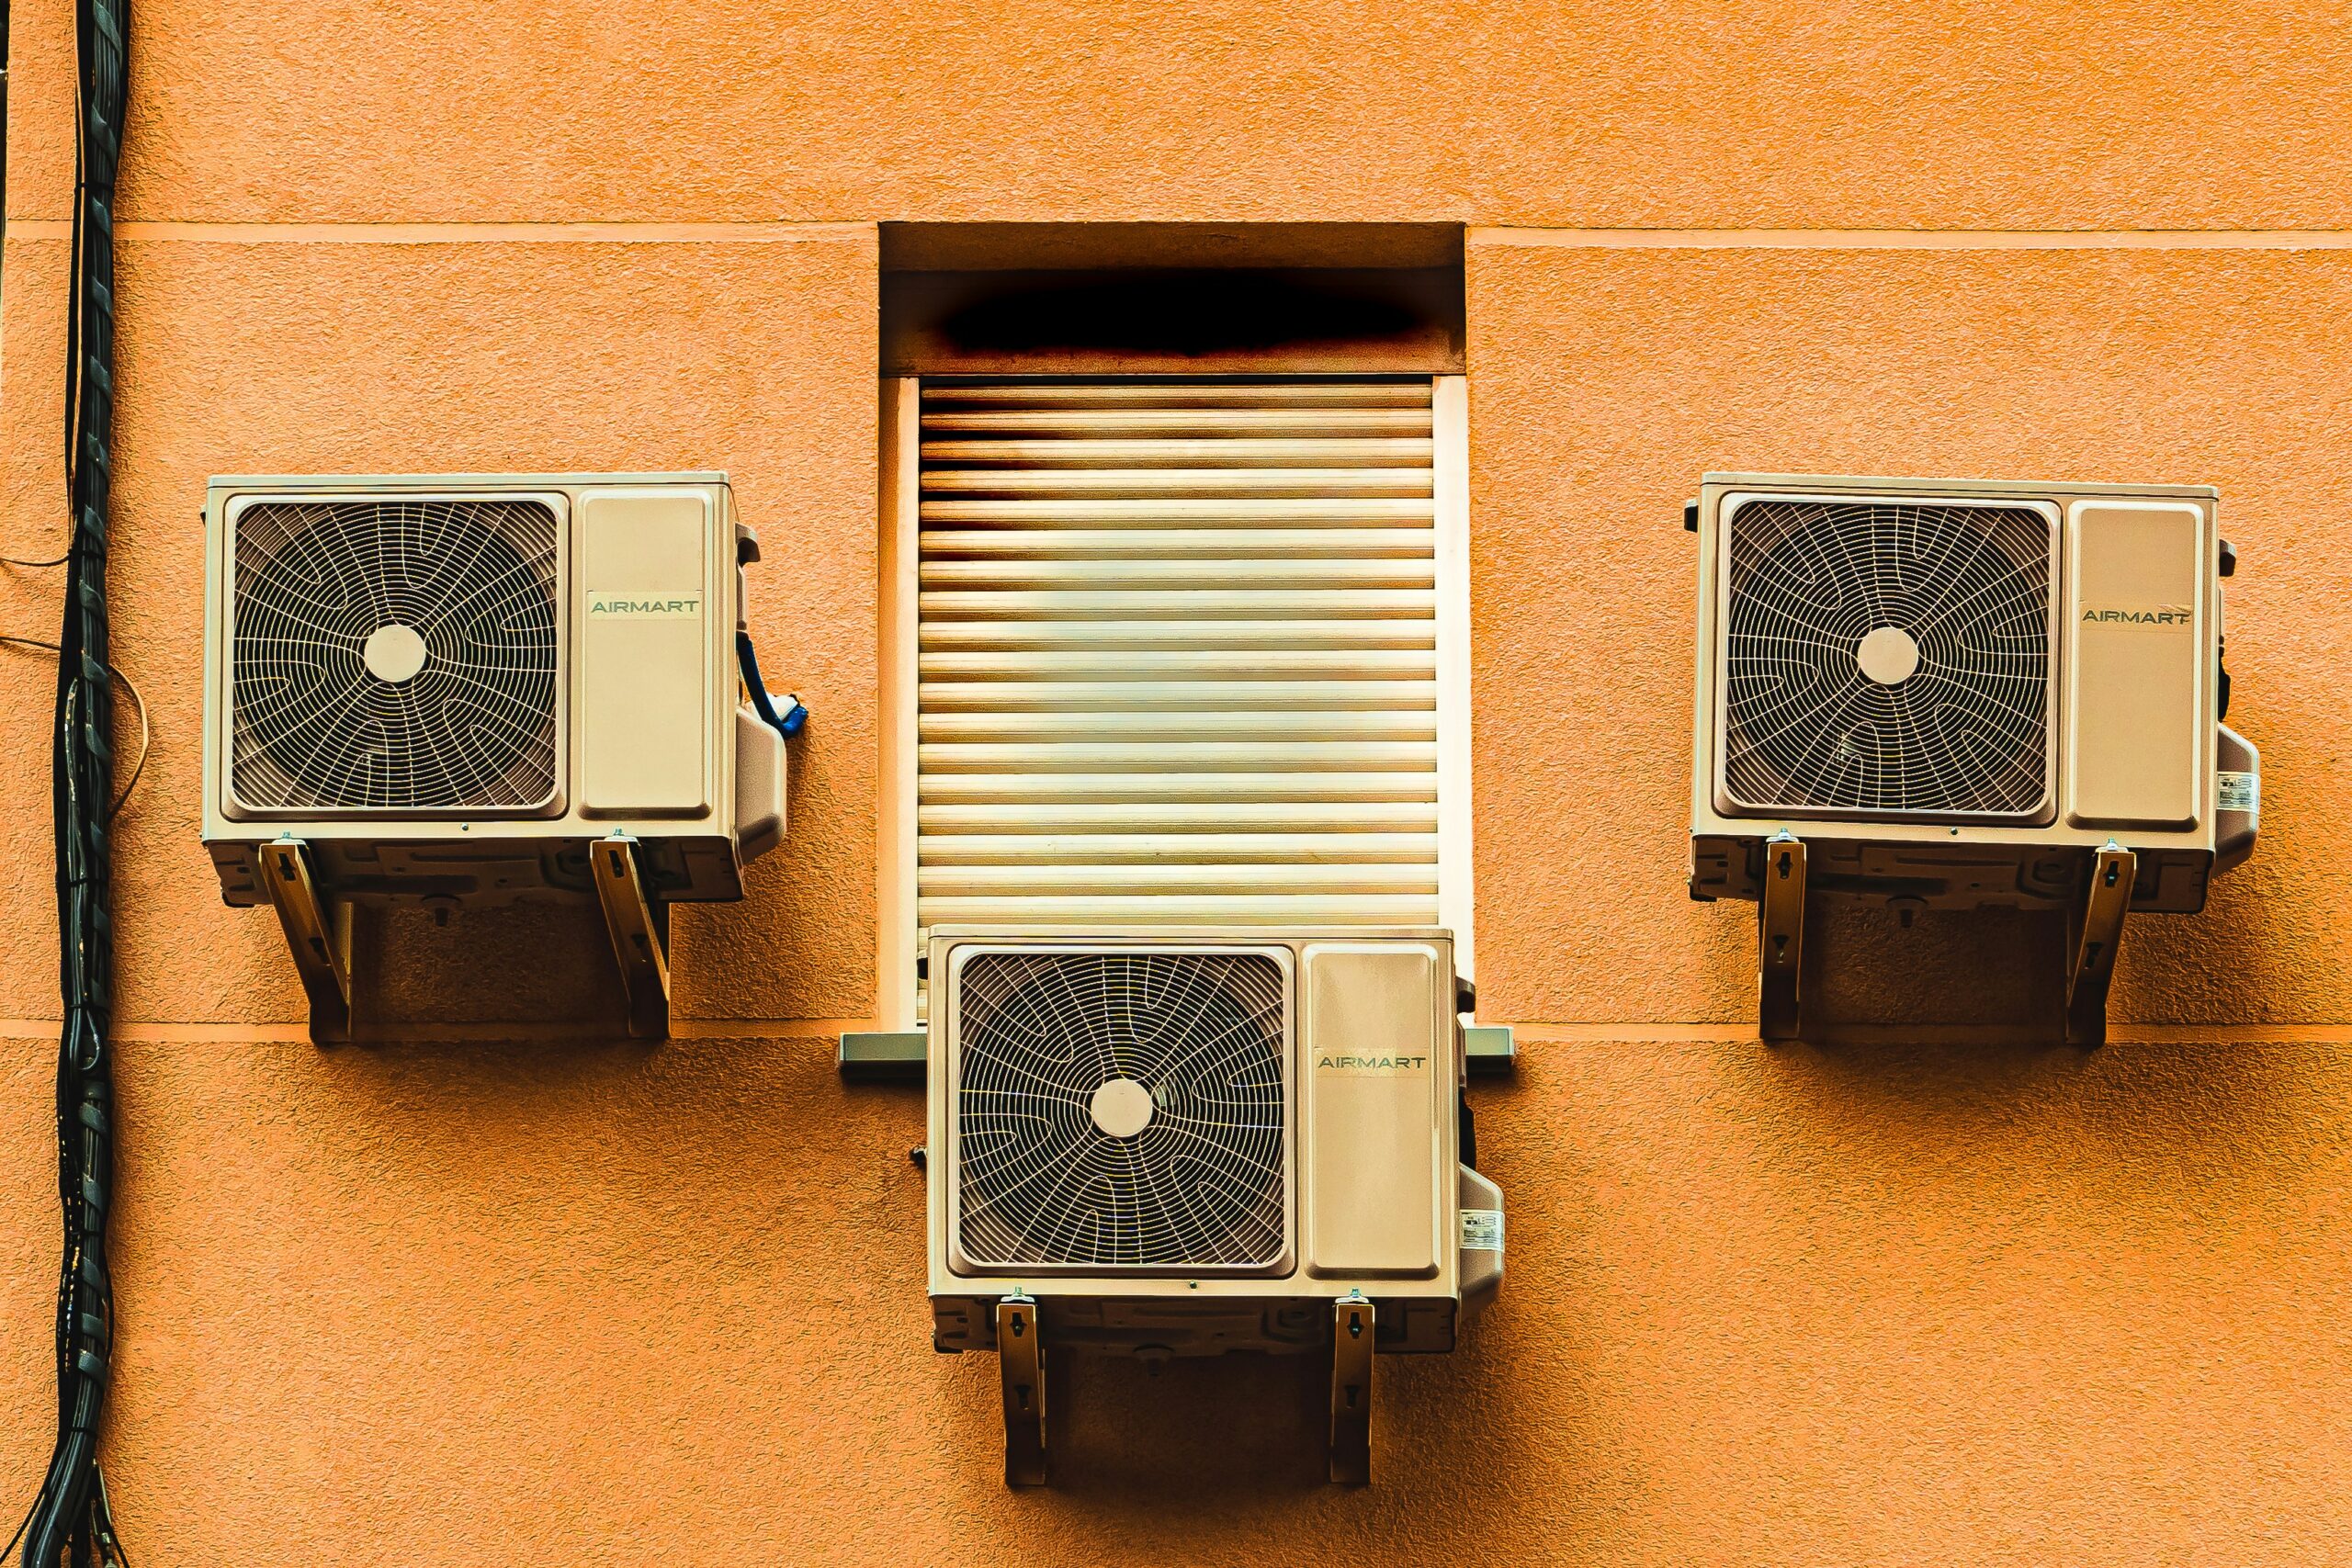 Finden Sie die perfekten Klimaanlagen für Ihr Zuhause oder Büro, um das ganze Jahr über kühl und komfortabel zu bleiben.